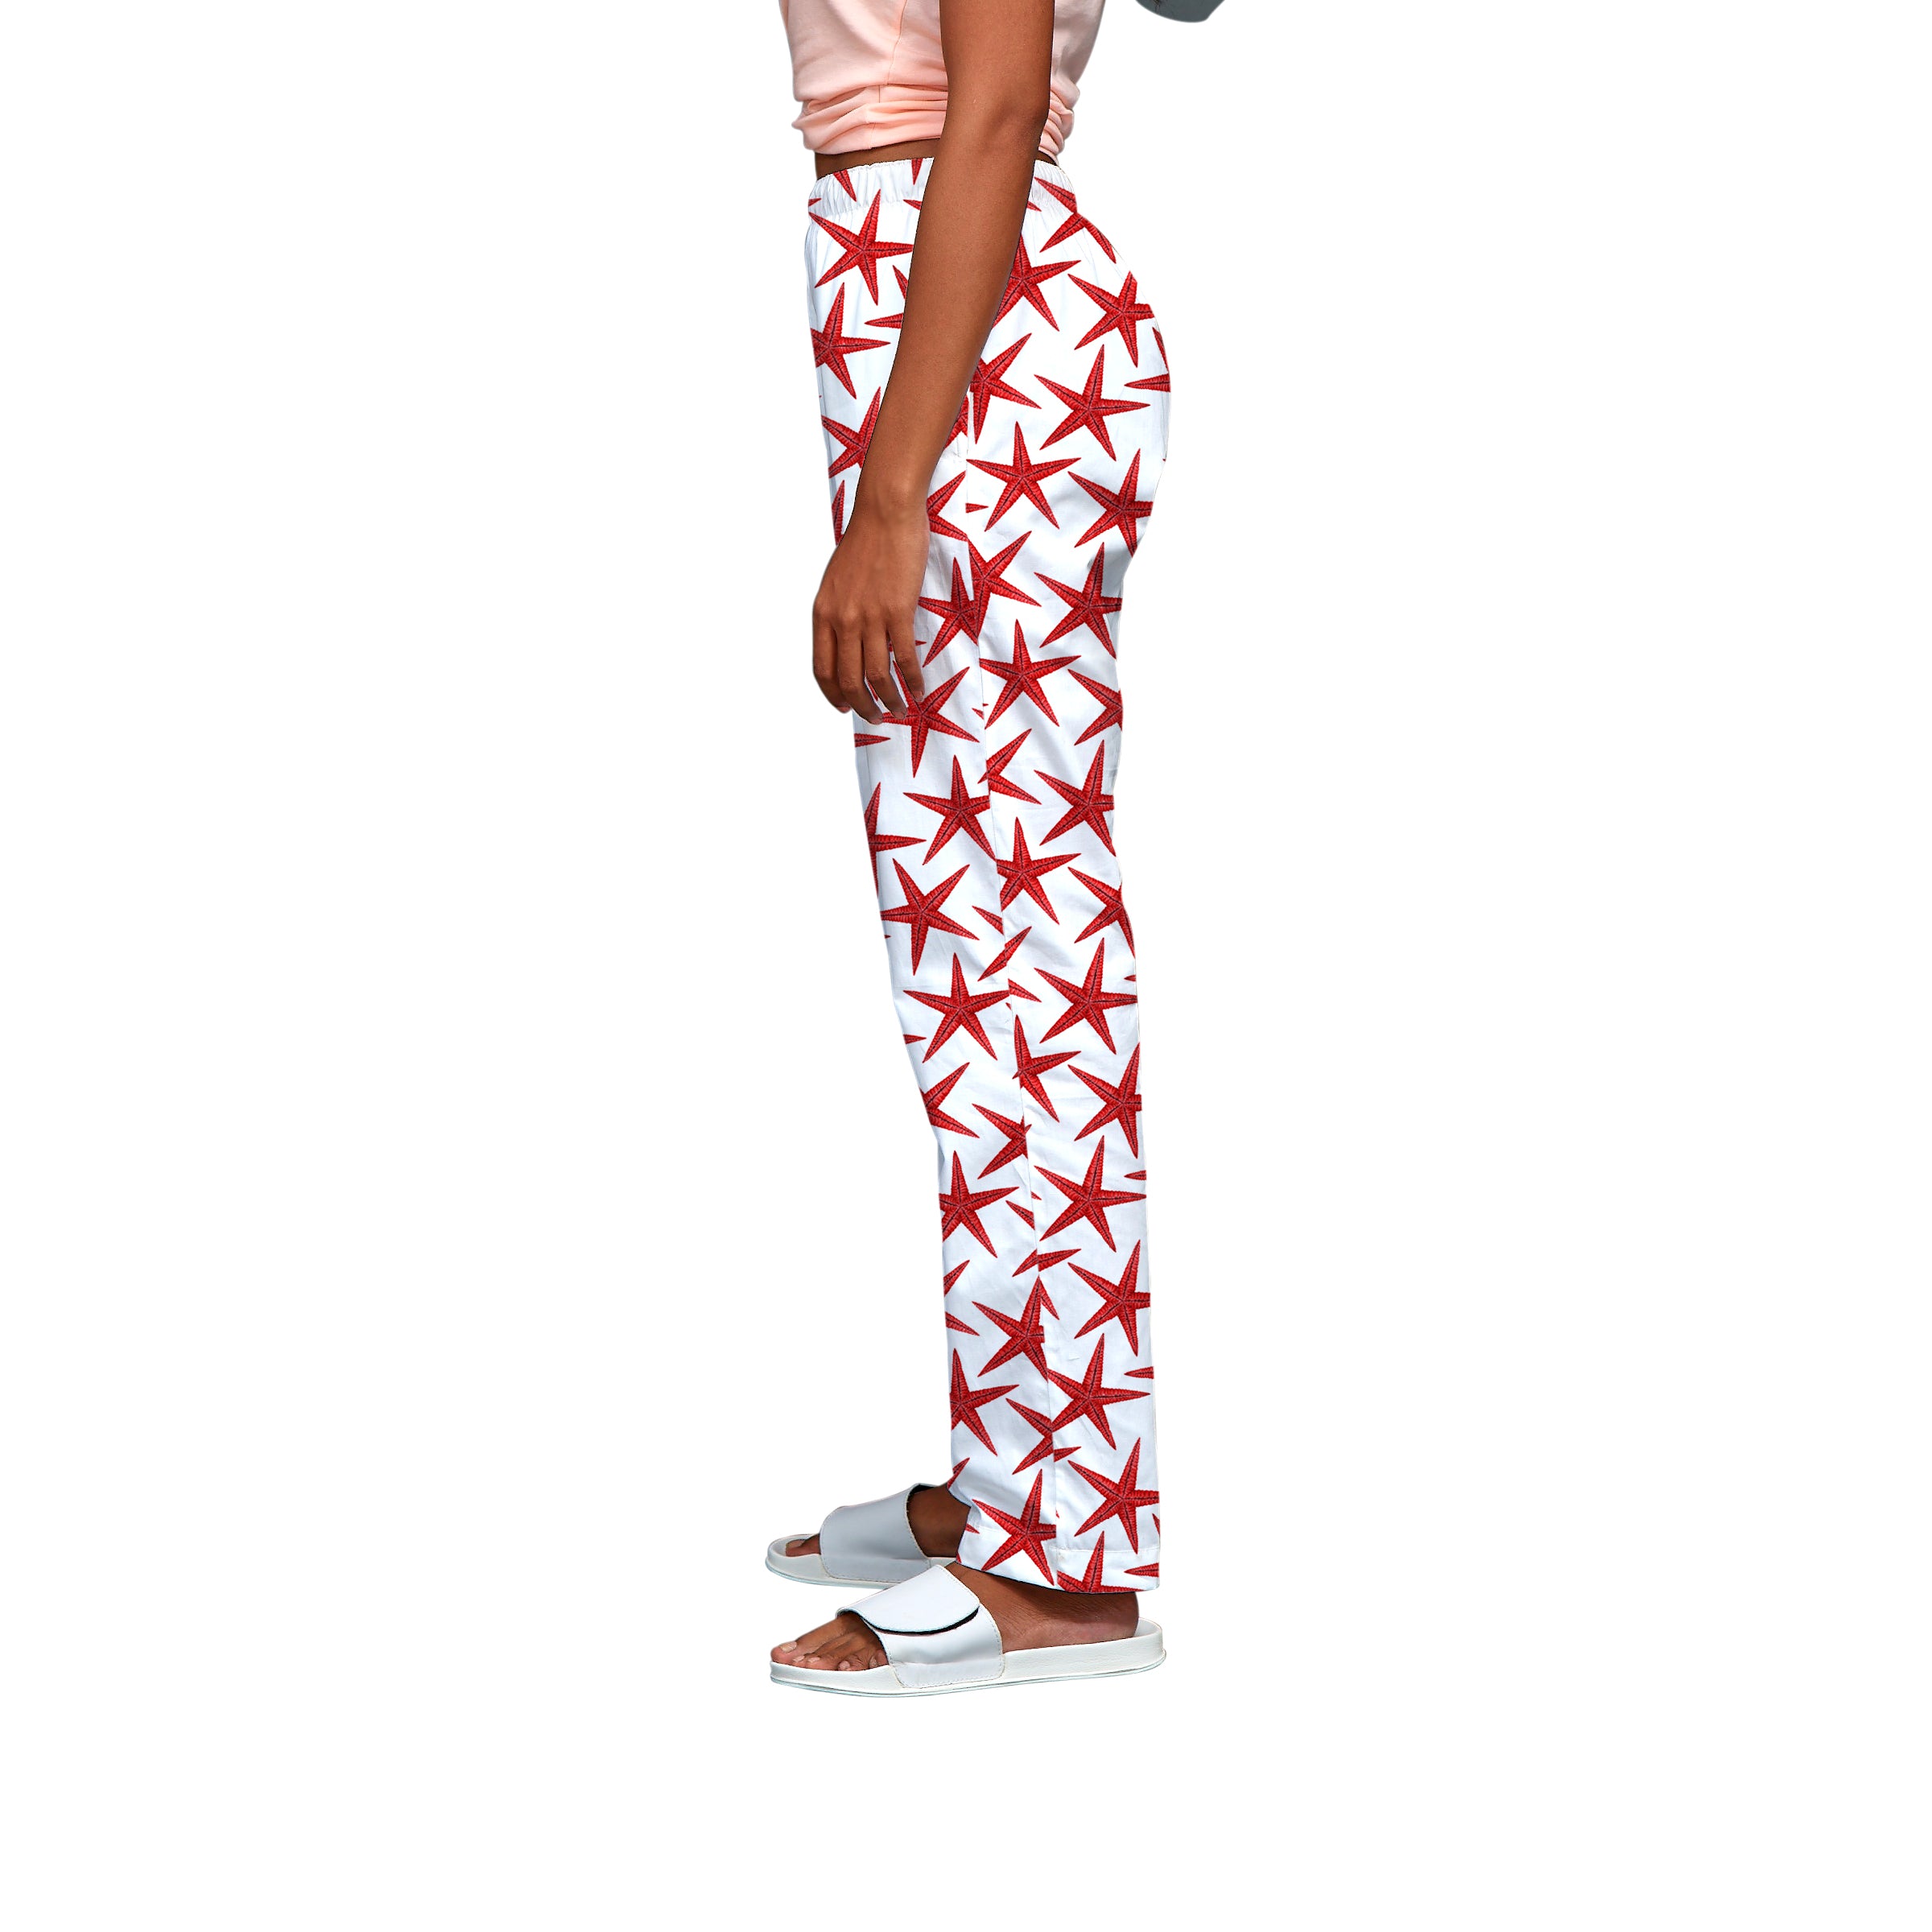 Red Starfish Pyjama For Women